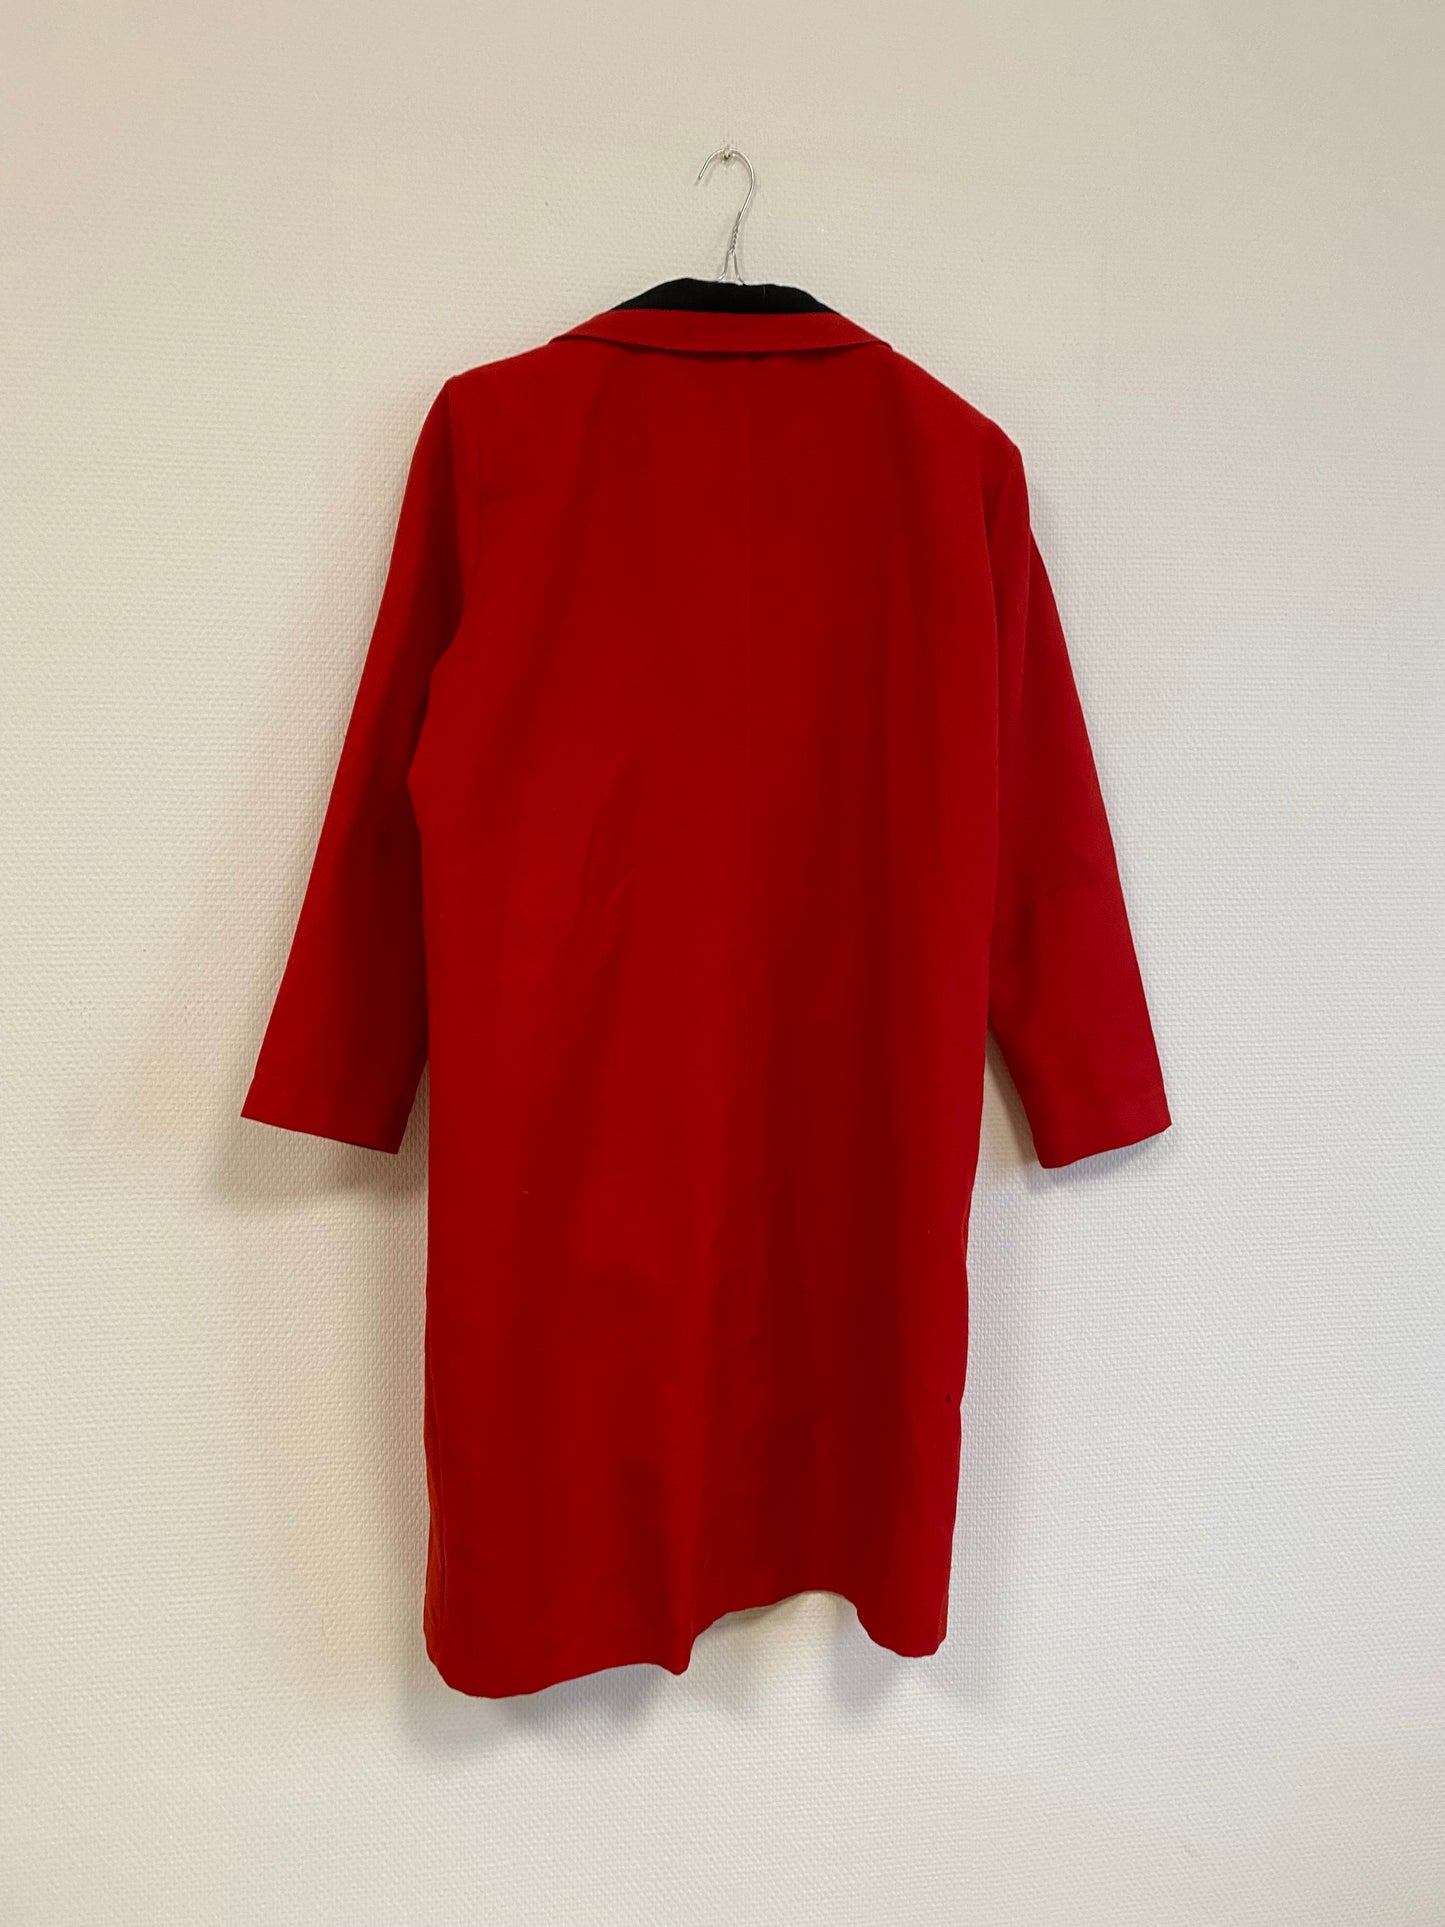 Robe rouge 80s